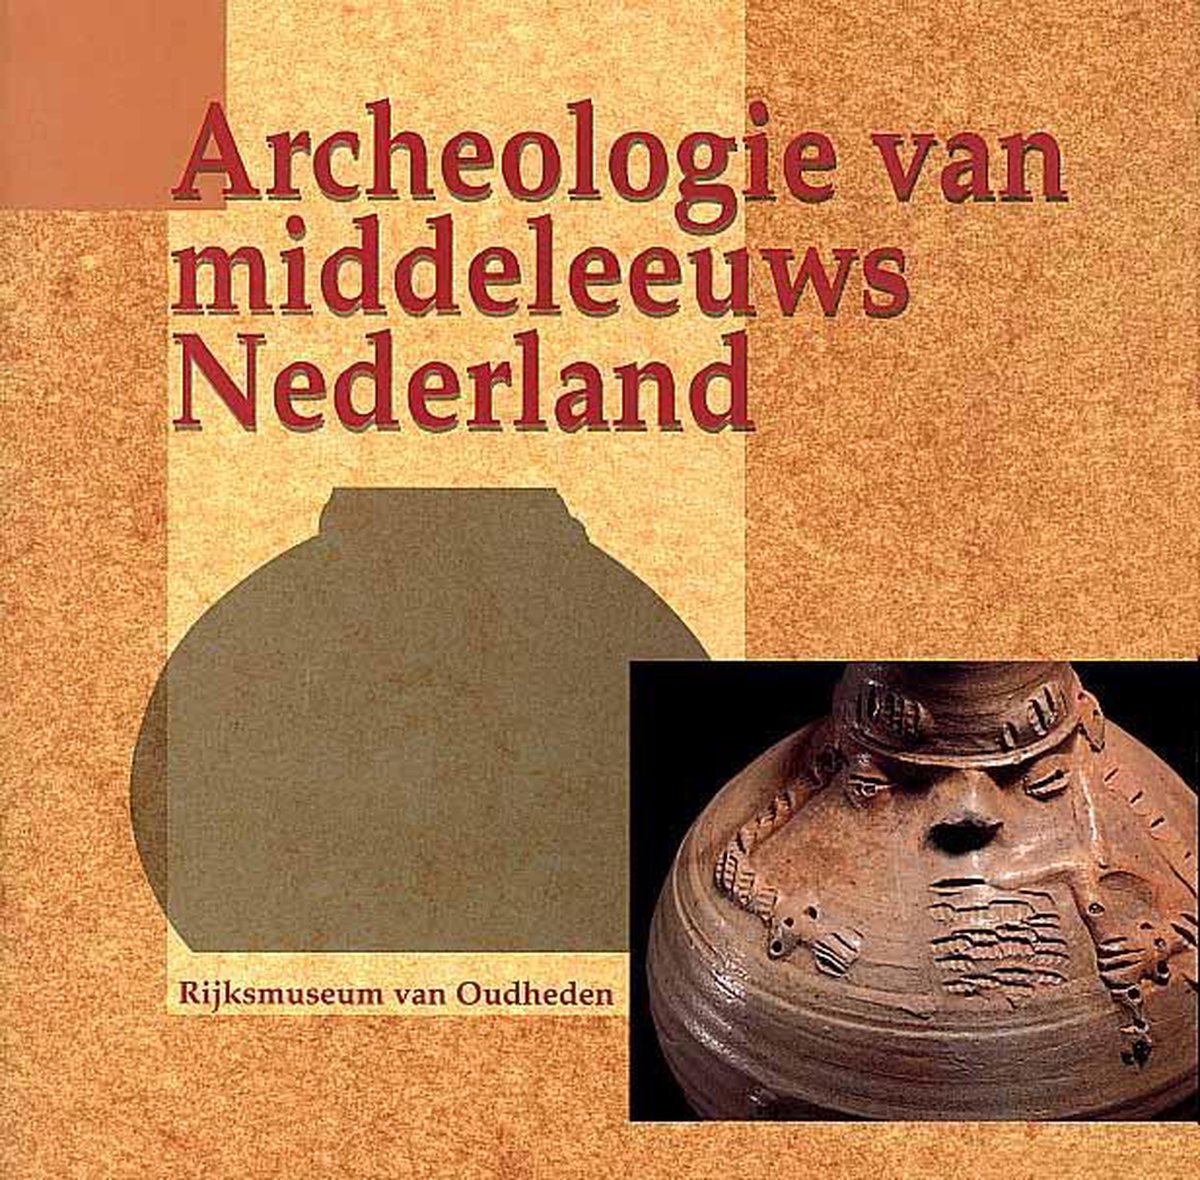 Archeologie van middeleeuws Nederland